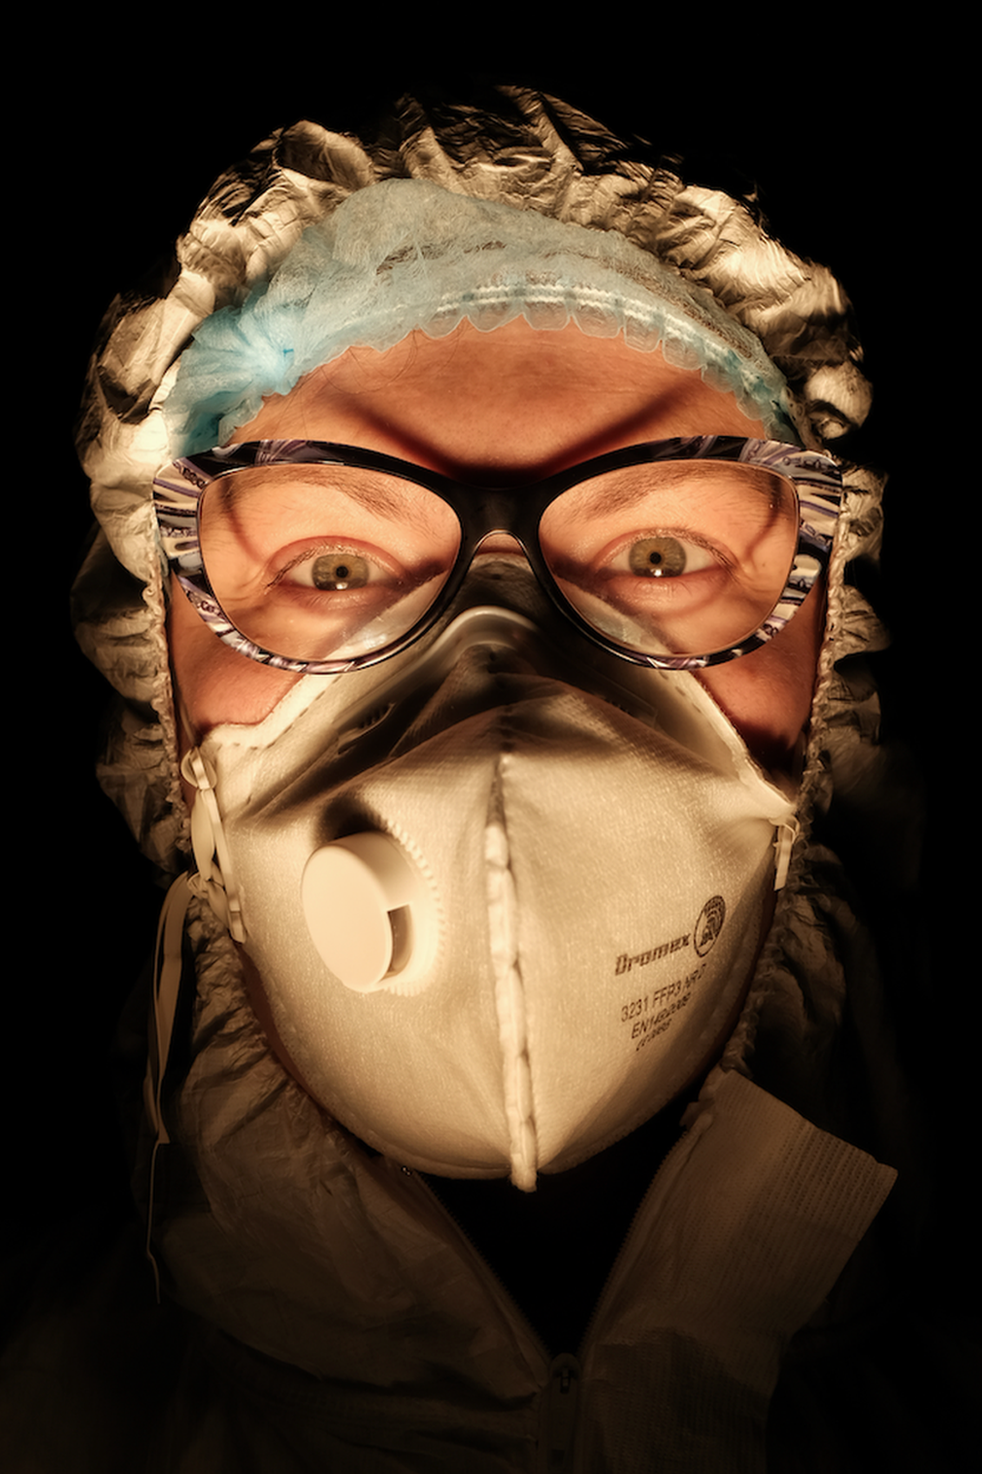 Una enfermera con la cara cubierta con una máscara en un entorno oscuro